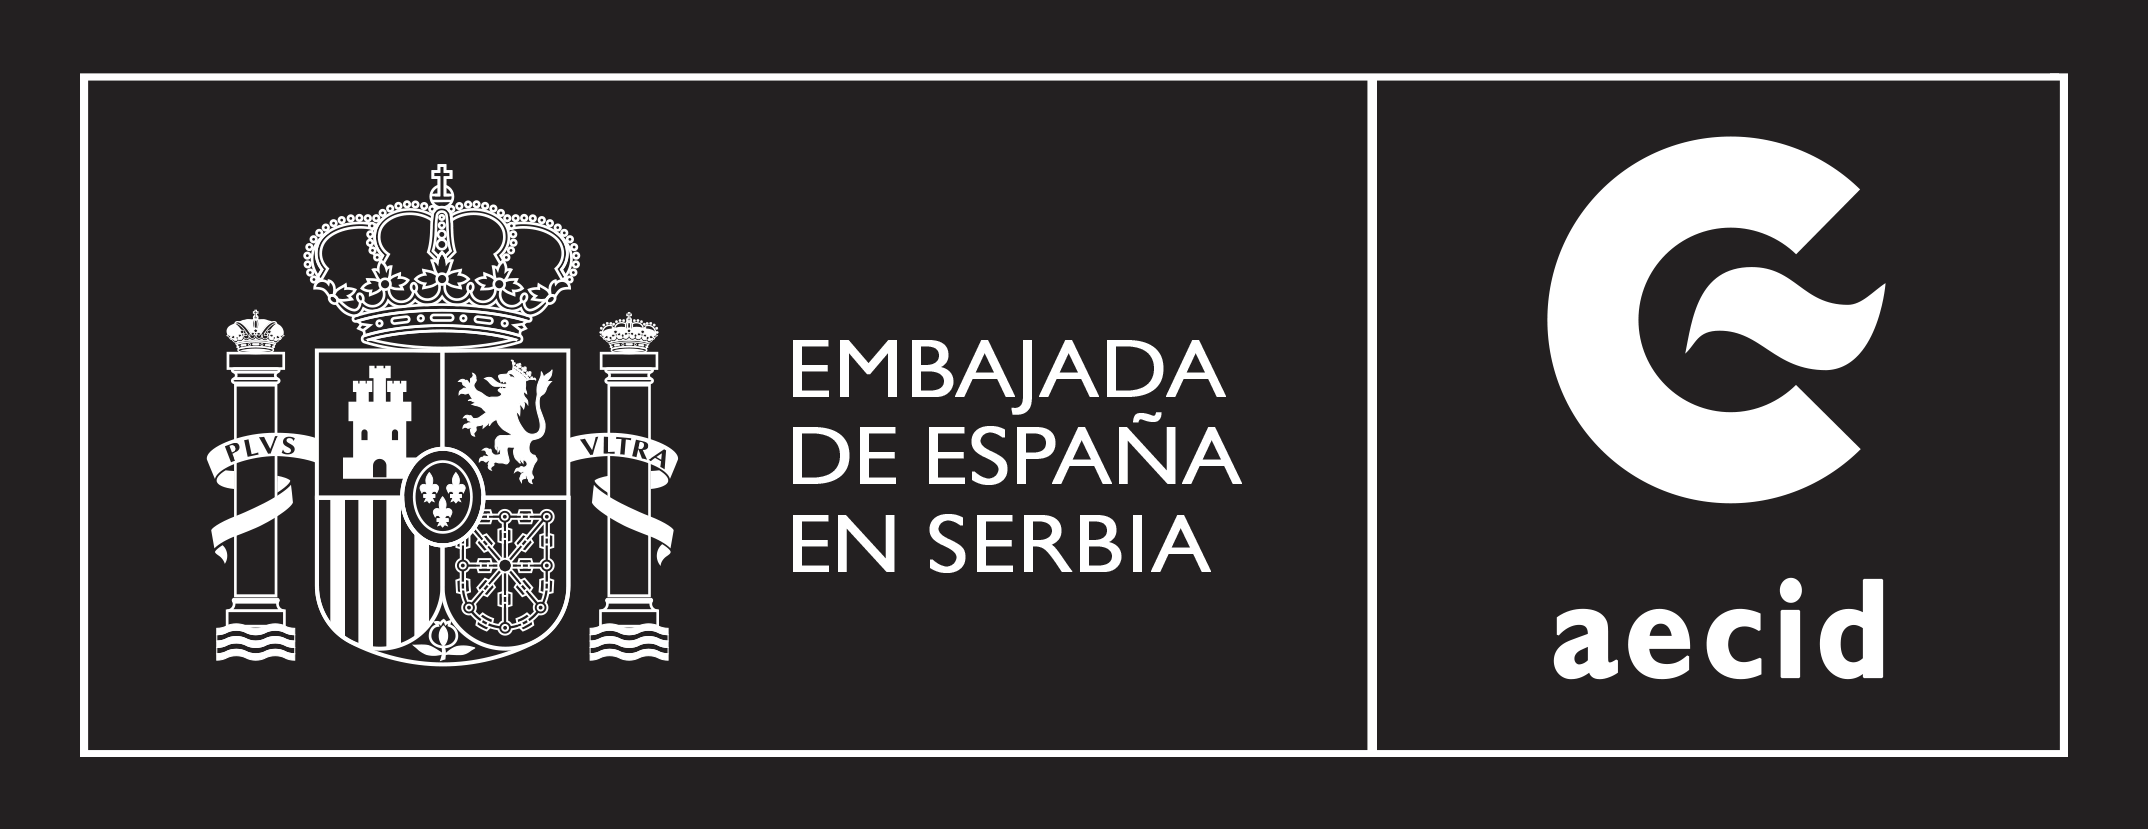 Embajada de Epaña en Serbia (Aecid)